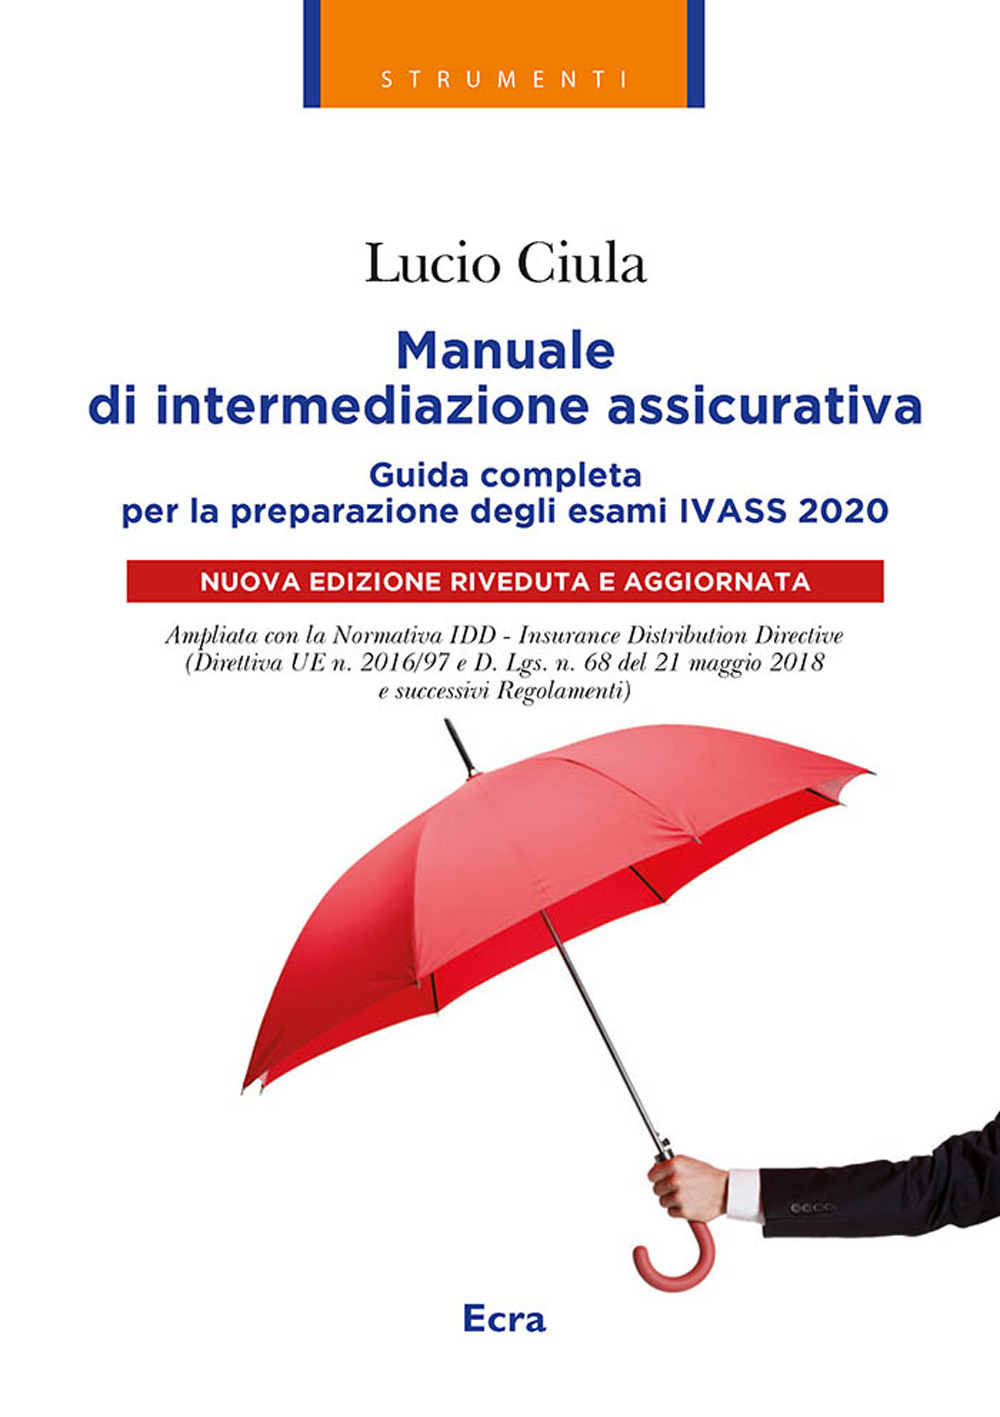 Libri Lucio Ciula - Manuale Di Intermediazione Assicurativa Per L'esame Ivass 2020 NUOVO SIGILLATO, EDIZIONE DEL 17/02/2020 SUBITO DISPONIBILE